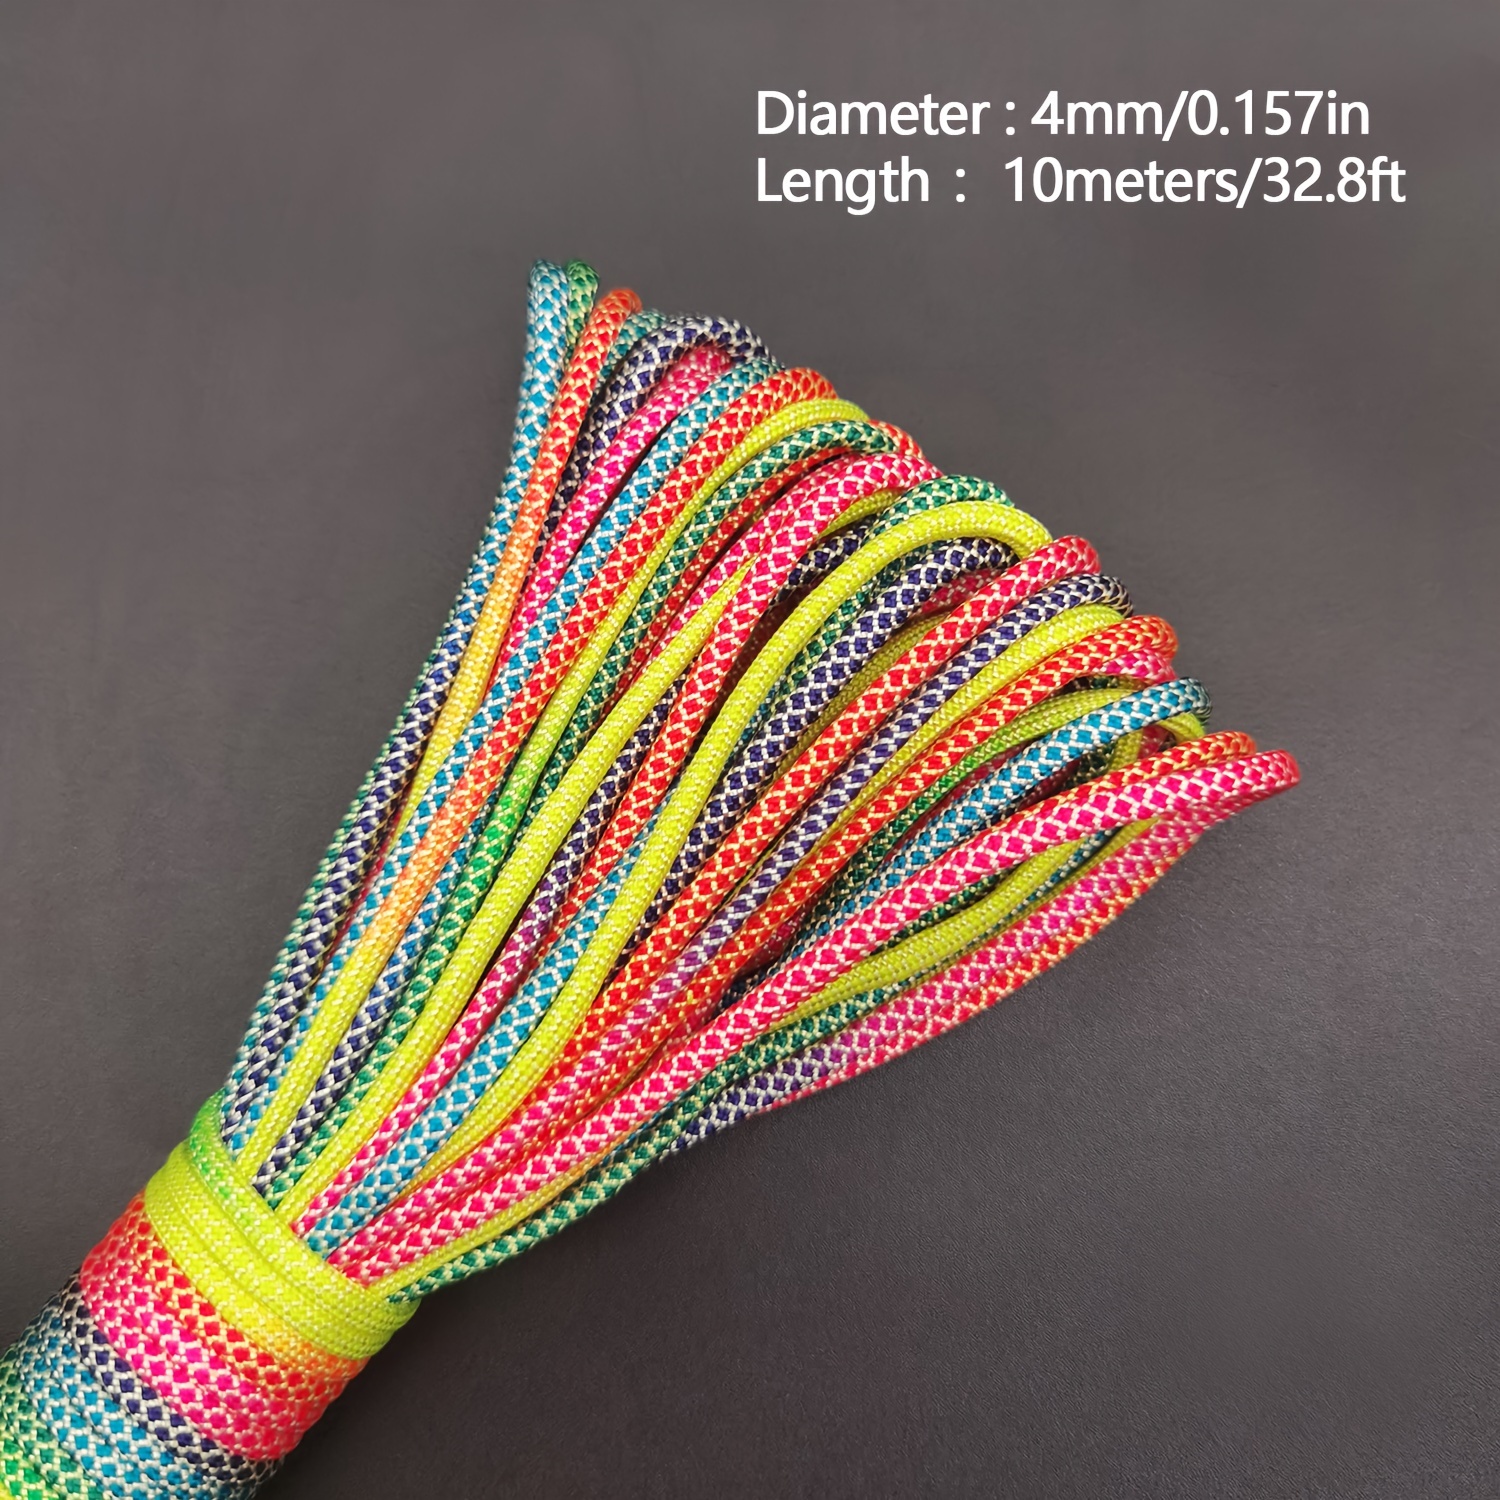 1pc 5 Meters 10 Meters Length Rope 2mm 3mm 4mm Diameter Rainbow